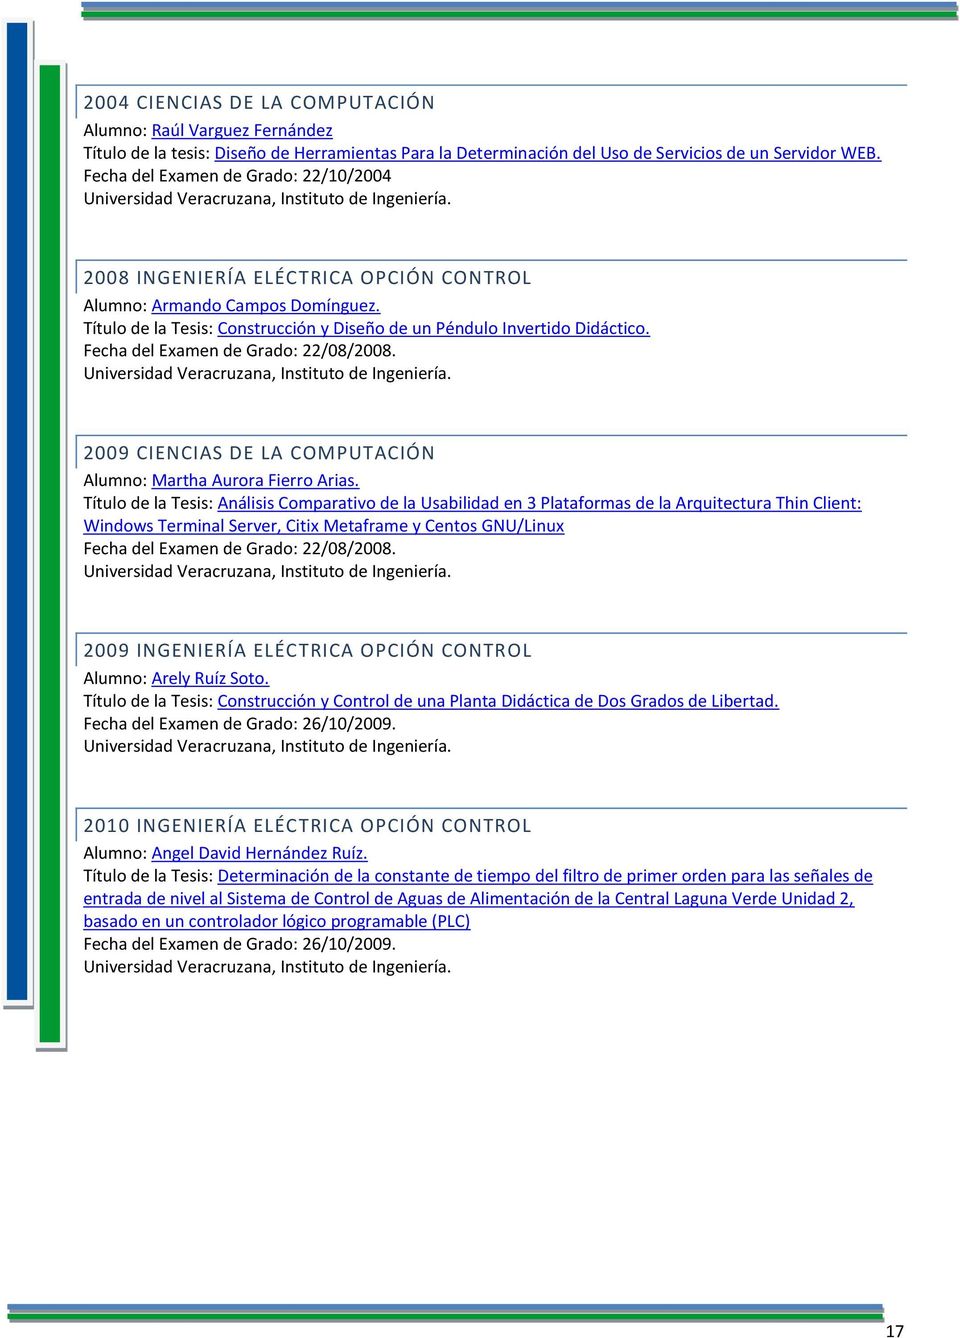 Título de la Tesis: Construcción y Diseño de un Péndulo Invertido Didáctico. Fecha del Examen de Grado: 22/08/2008. Universidad Veracruzana, Instituto de Ingeniería.